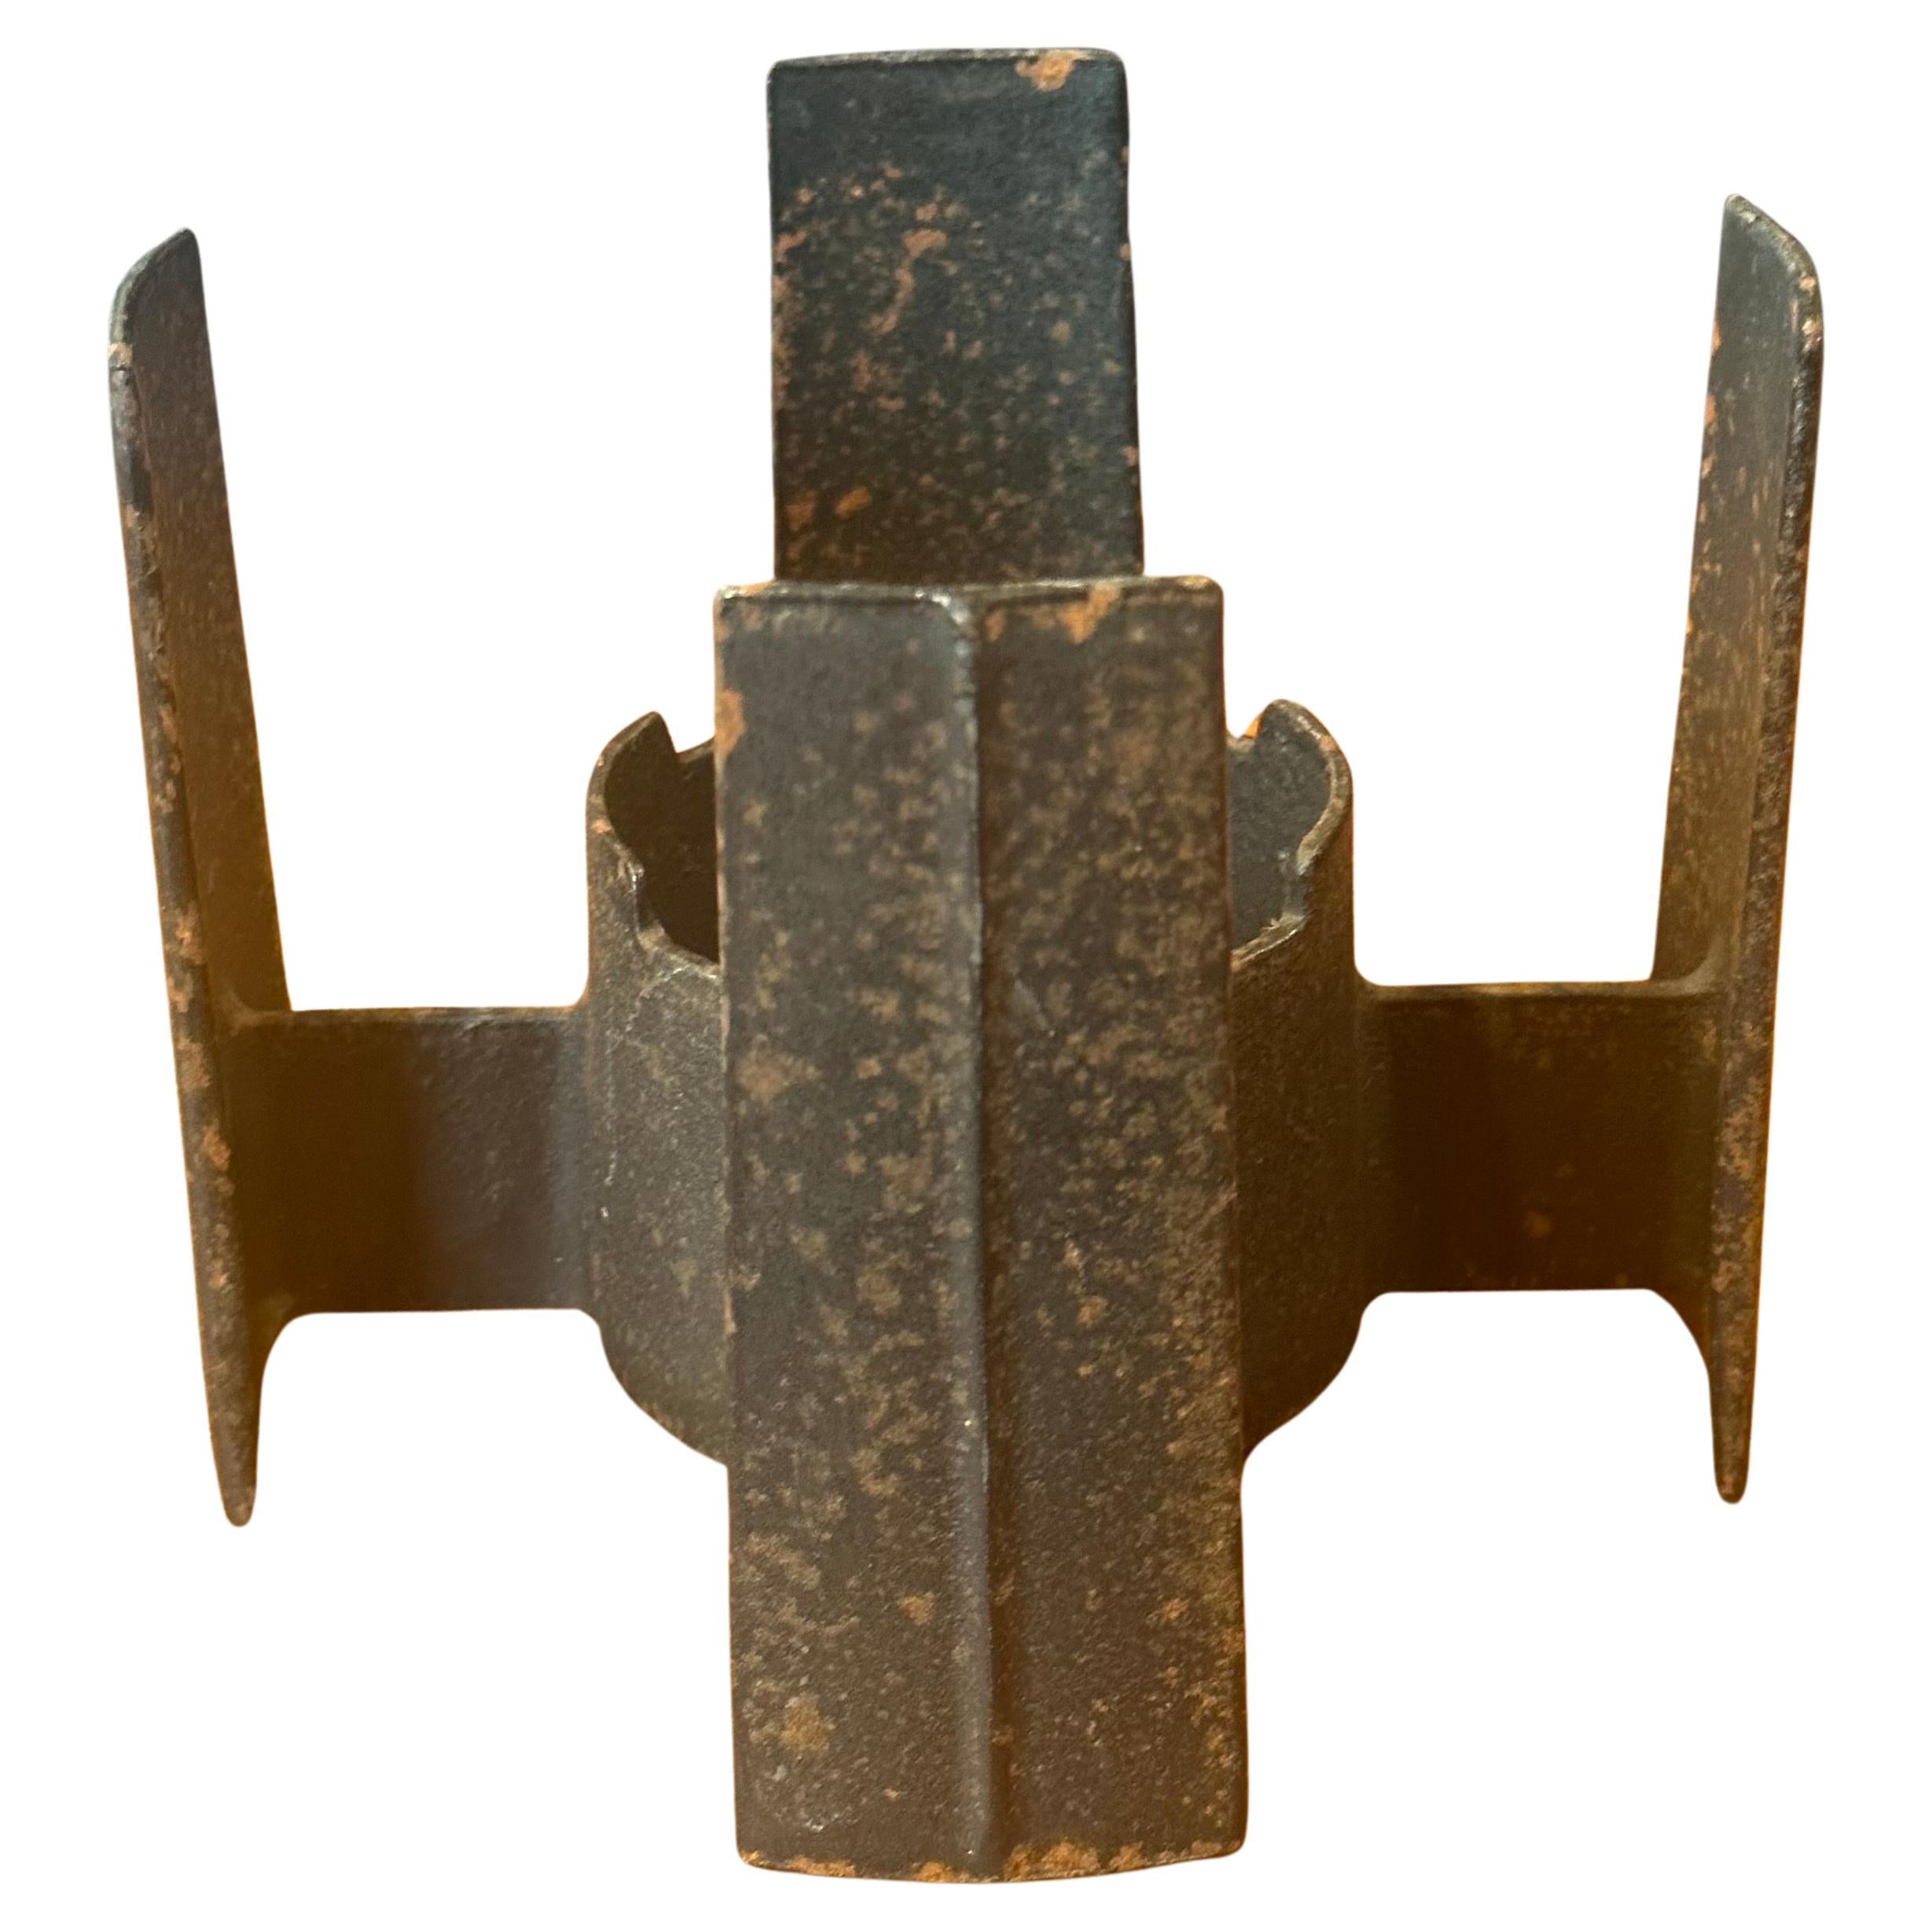 MCM-Kerzenhalter aus Eisen von Dansk, ca. 1960er Jahre.  Dies ist eine seltene Form hat eine große Patina und misst 6 